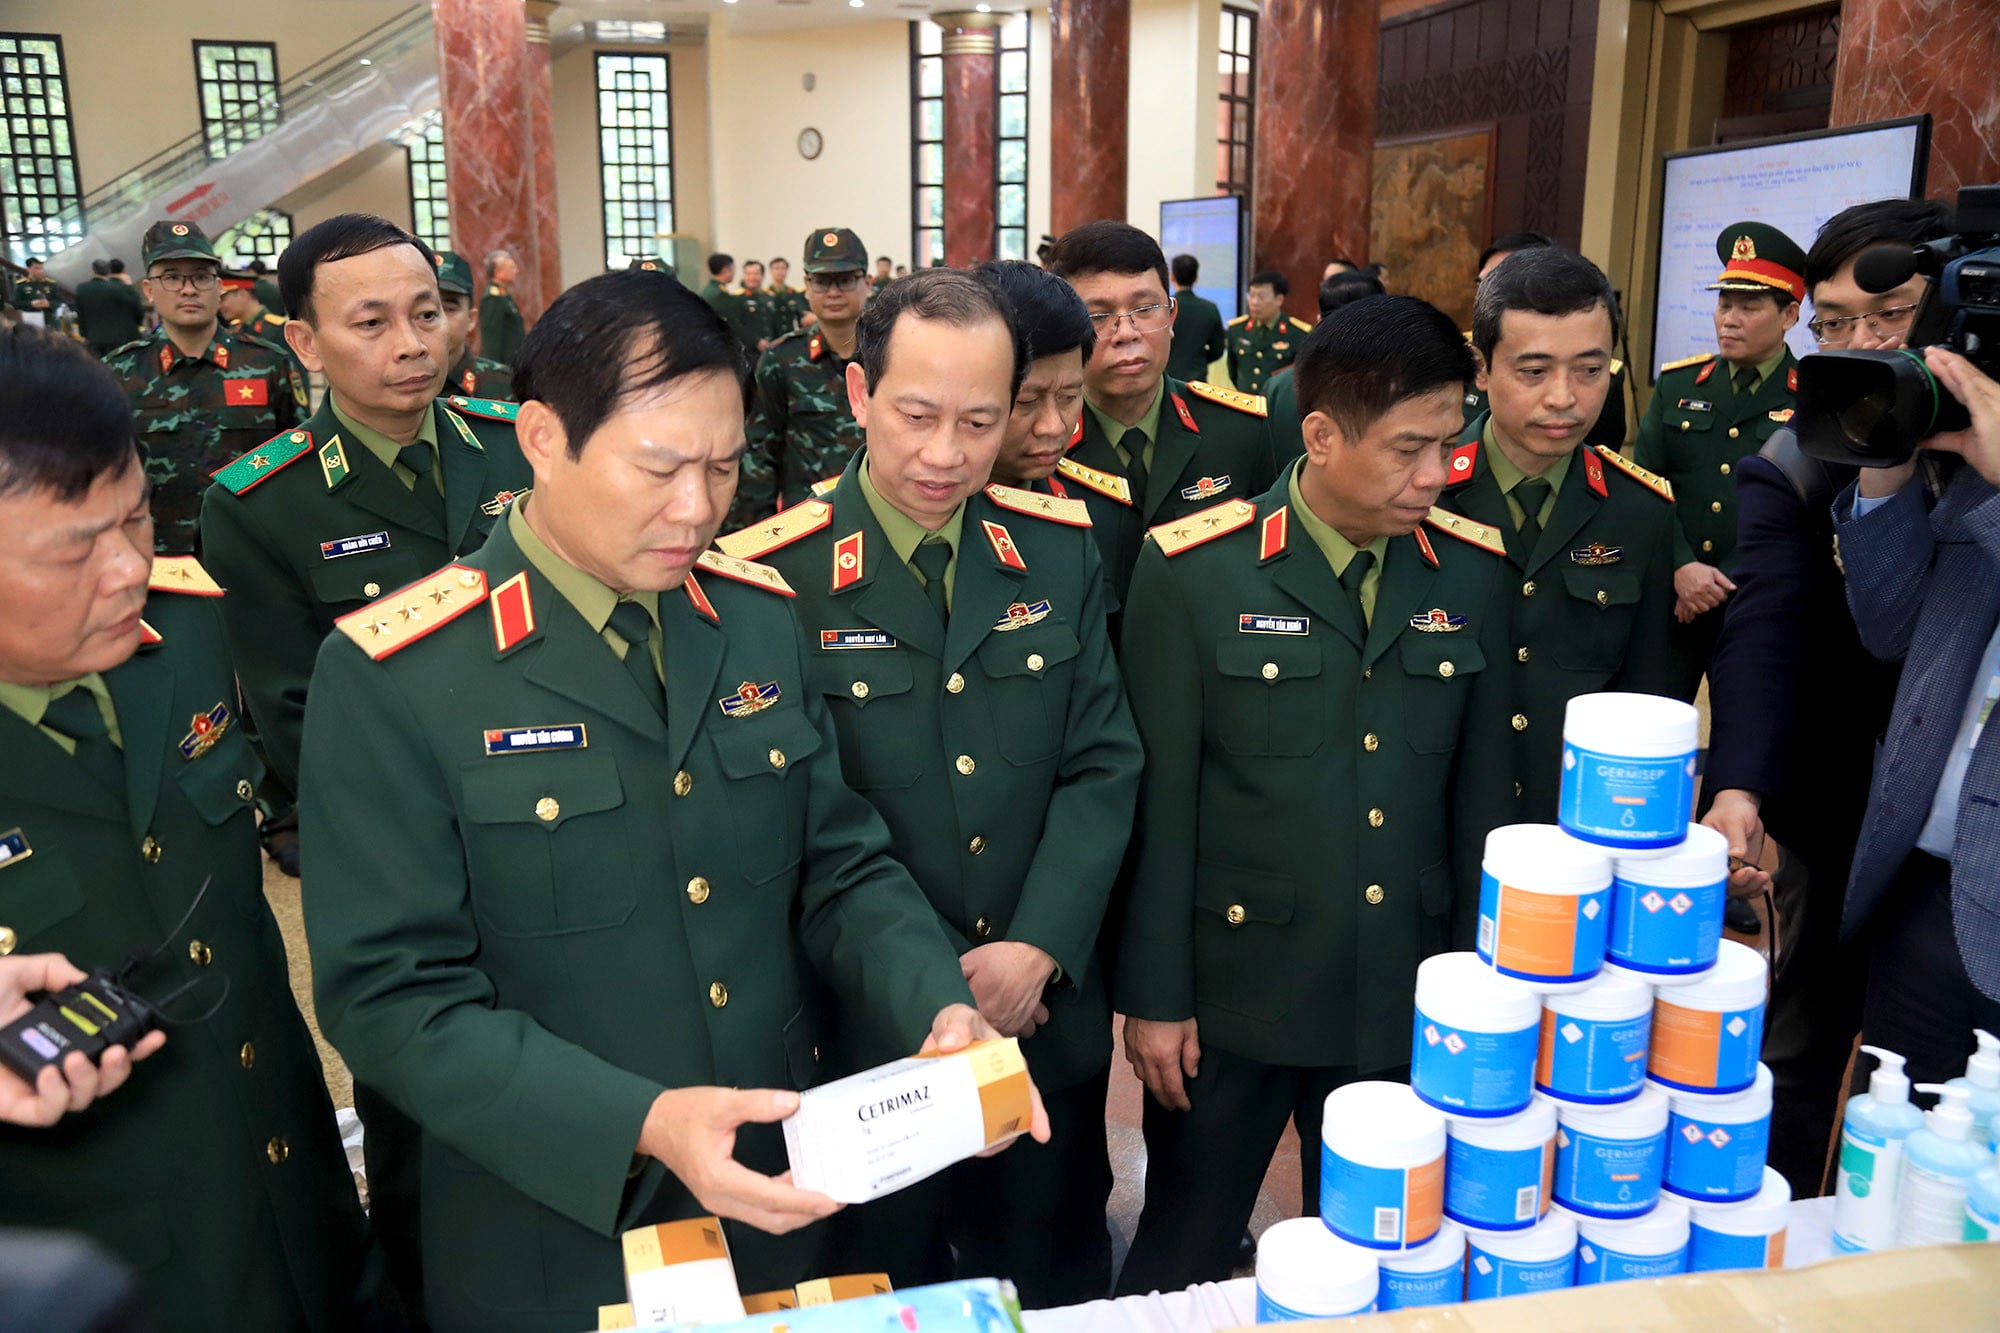 Thuong tuong Nguyen Tan Cuong Tong tham muu truong QDND Viet Nam min - Việt Nam cử 76 quân nhân tham gia cứu nạn tại Thổ Nhĩ Kỳ